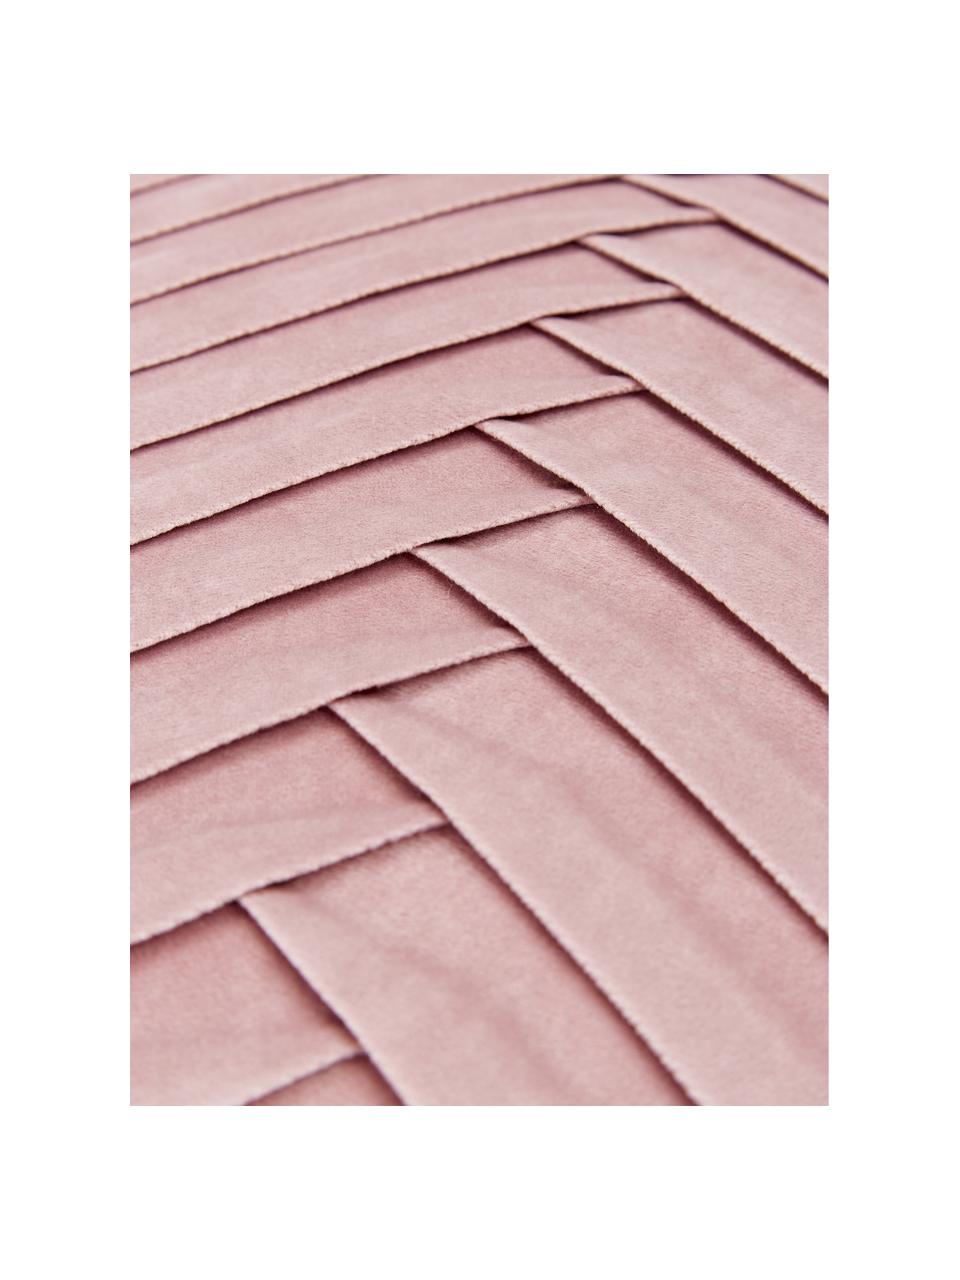 Fluwelen kussenhoes Lucie in roze met structuur-oppervlak, 100% fluweel (polyester)
Houd er rekening mee dat fluweel lichter of donkerder lijkt afhankelijk van de lichtinval en de richting waarin de polen liggen., Oudroze, B 45 x L 45 cm